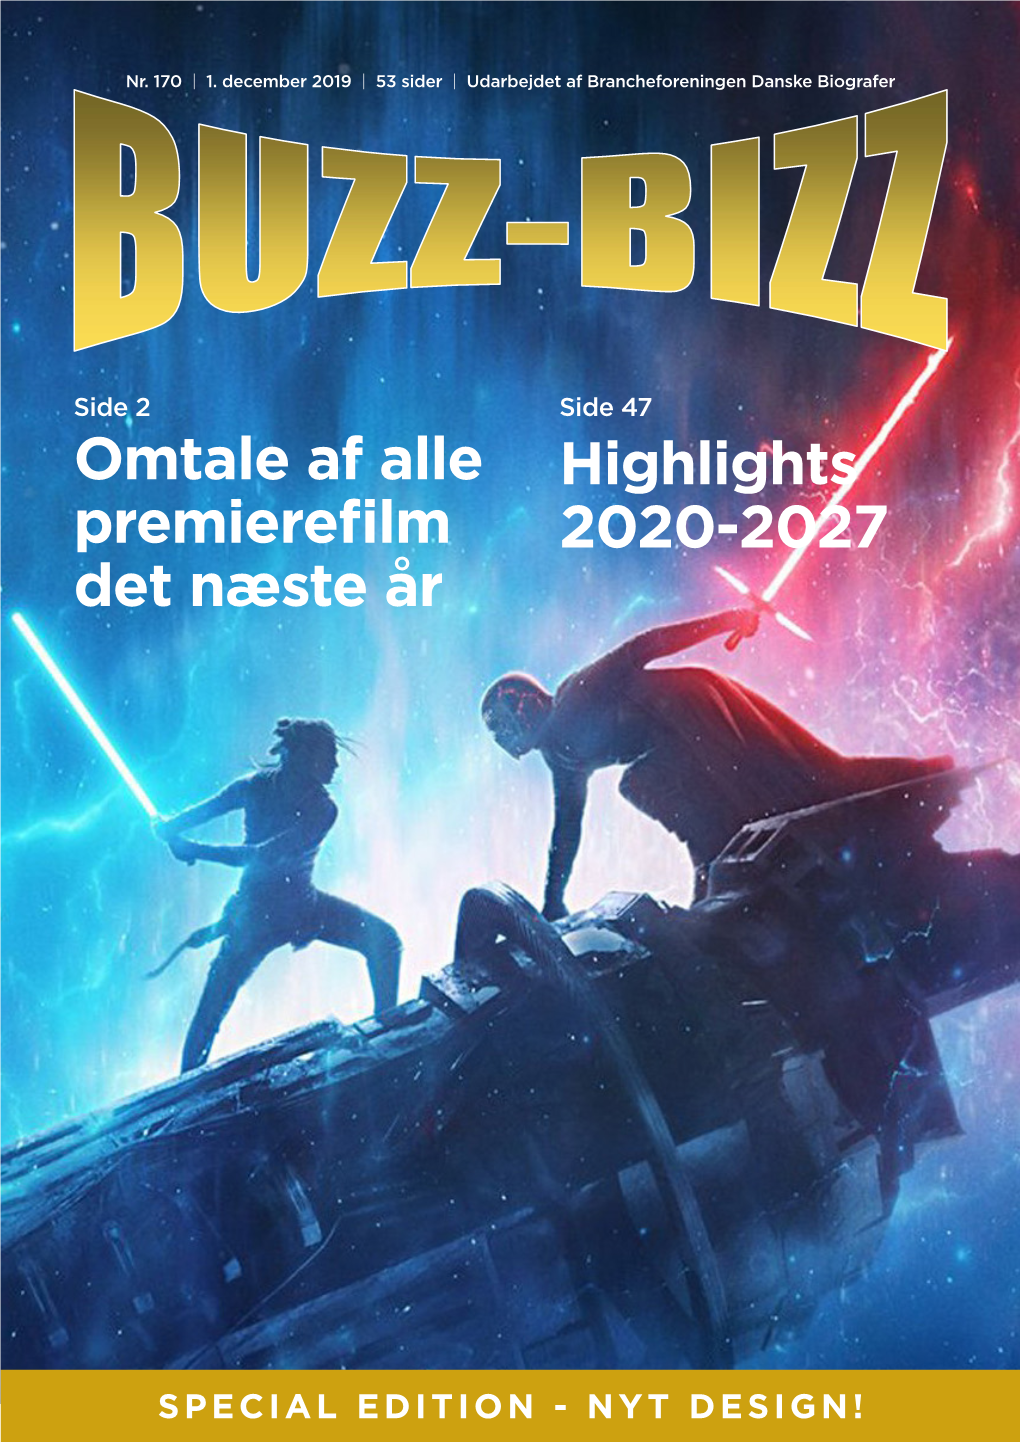 Highlights 2020-2027 Omtale Af Alle Premierefilm Det Næste År